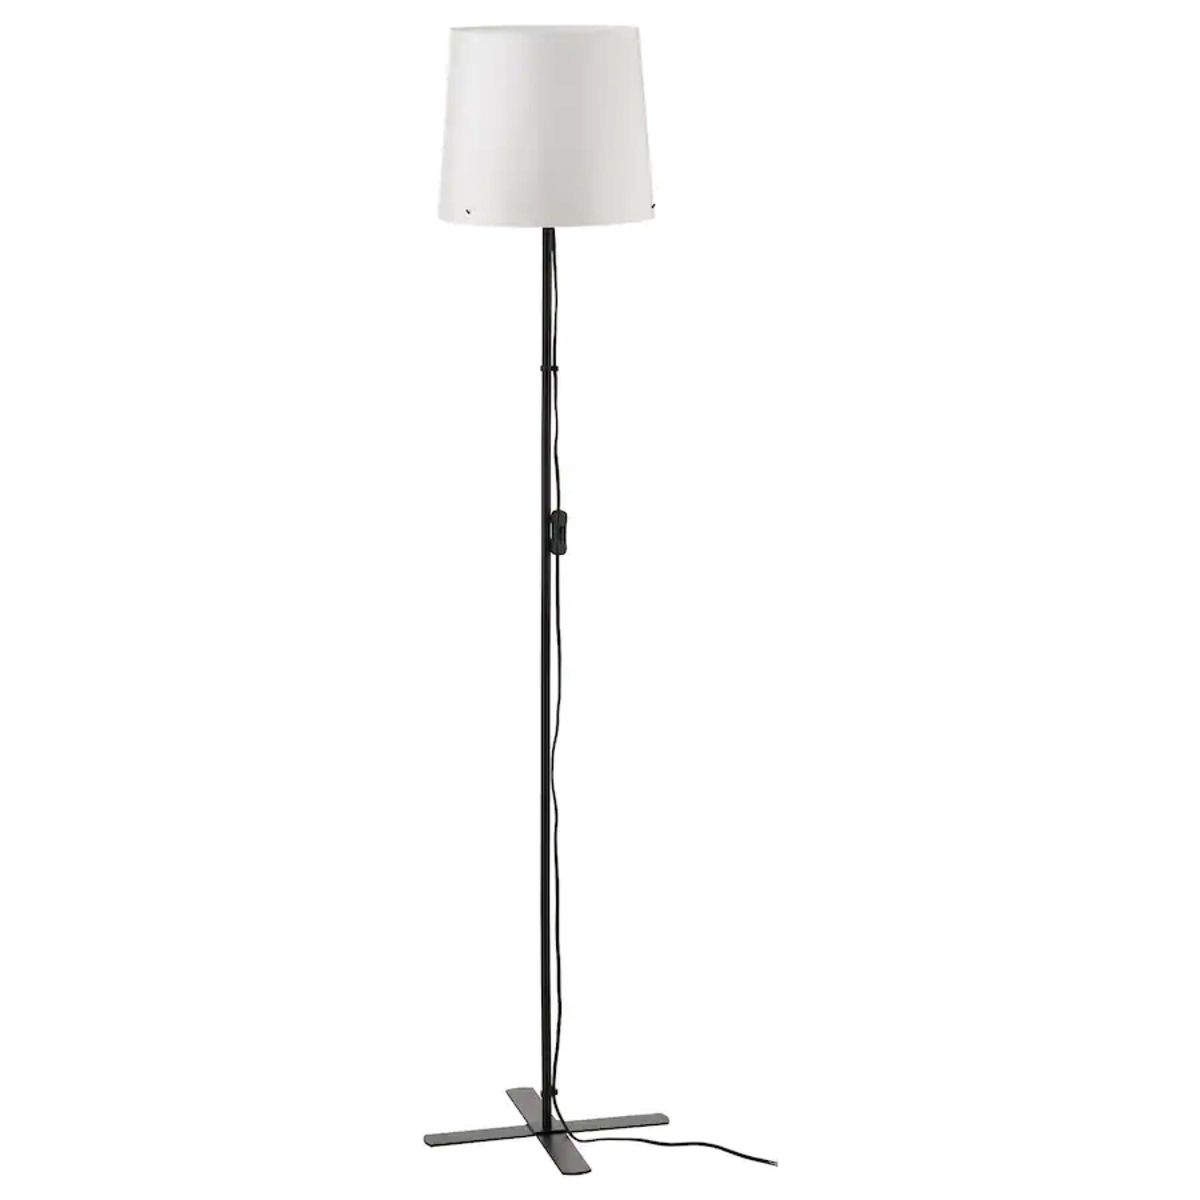 【新品】IKEA イケア バルラスト フロアランプ フロアスタンド インテリアライト ホワイト 150 cm 2個セット！  